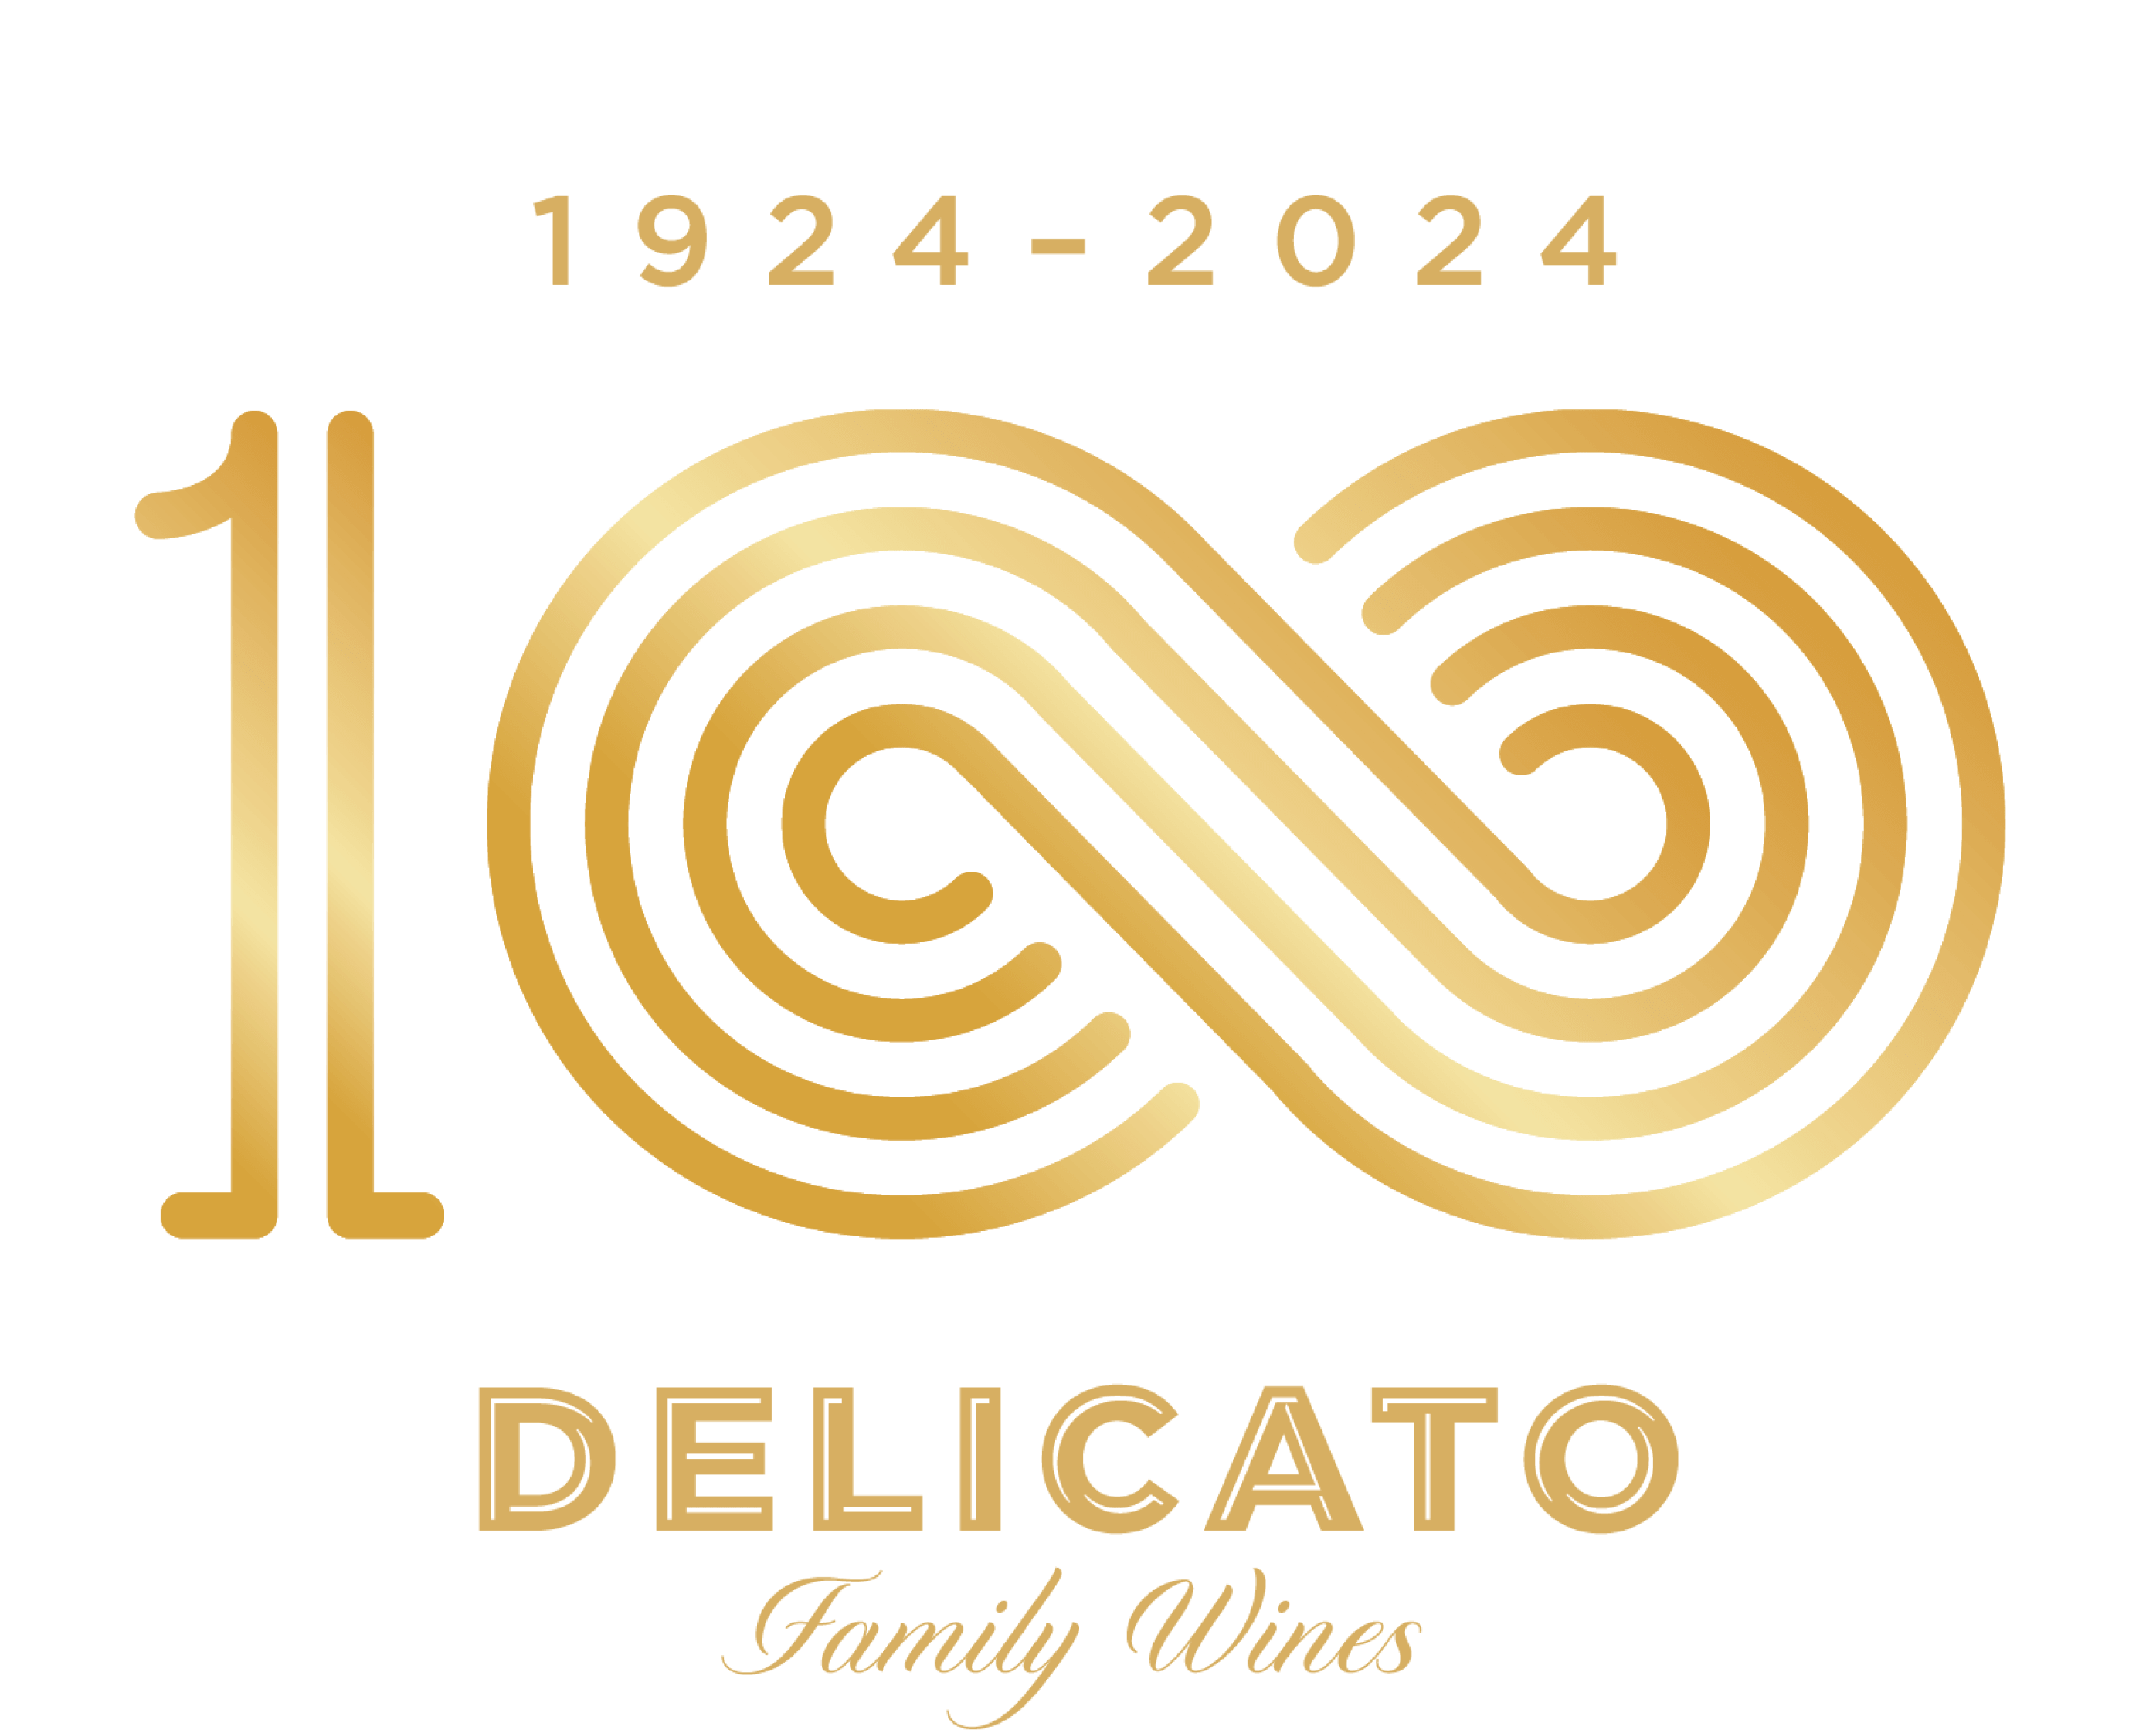 delicato 100 year anniversary